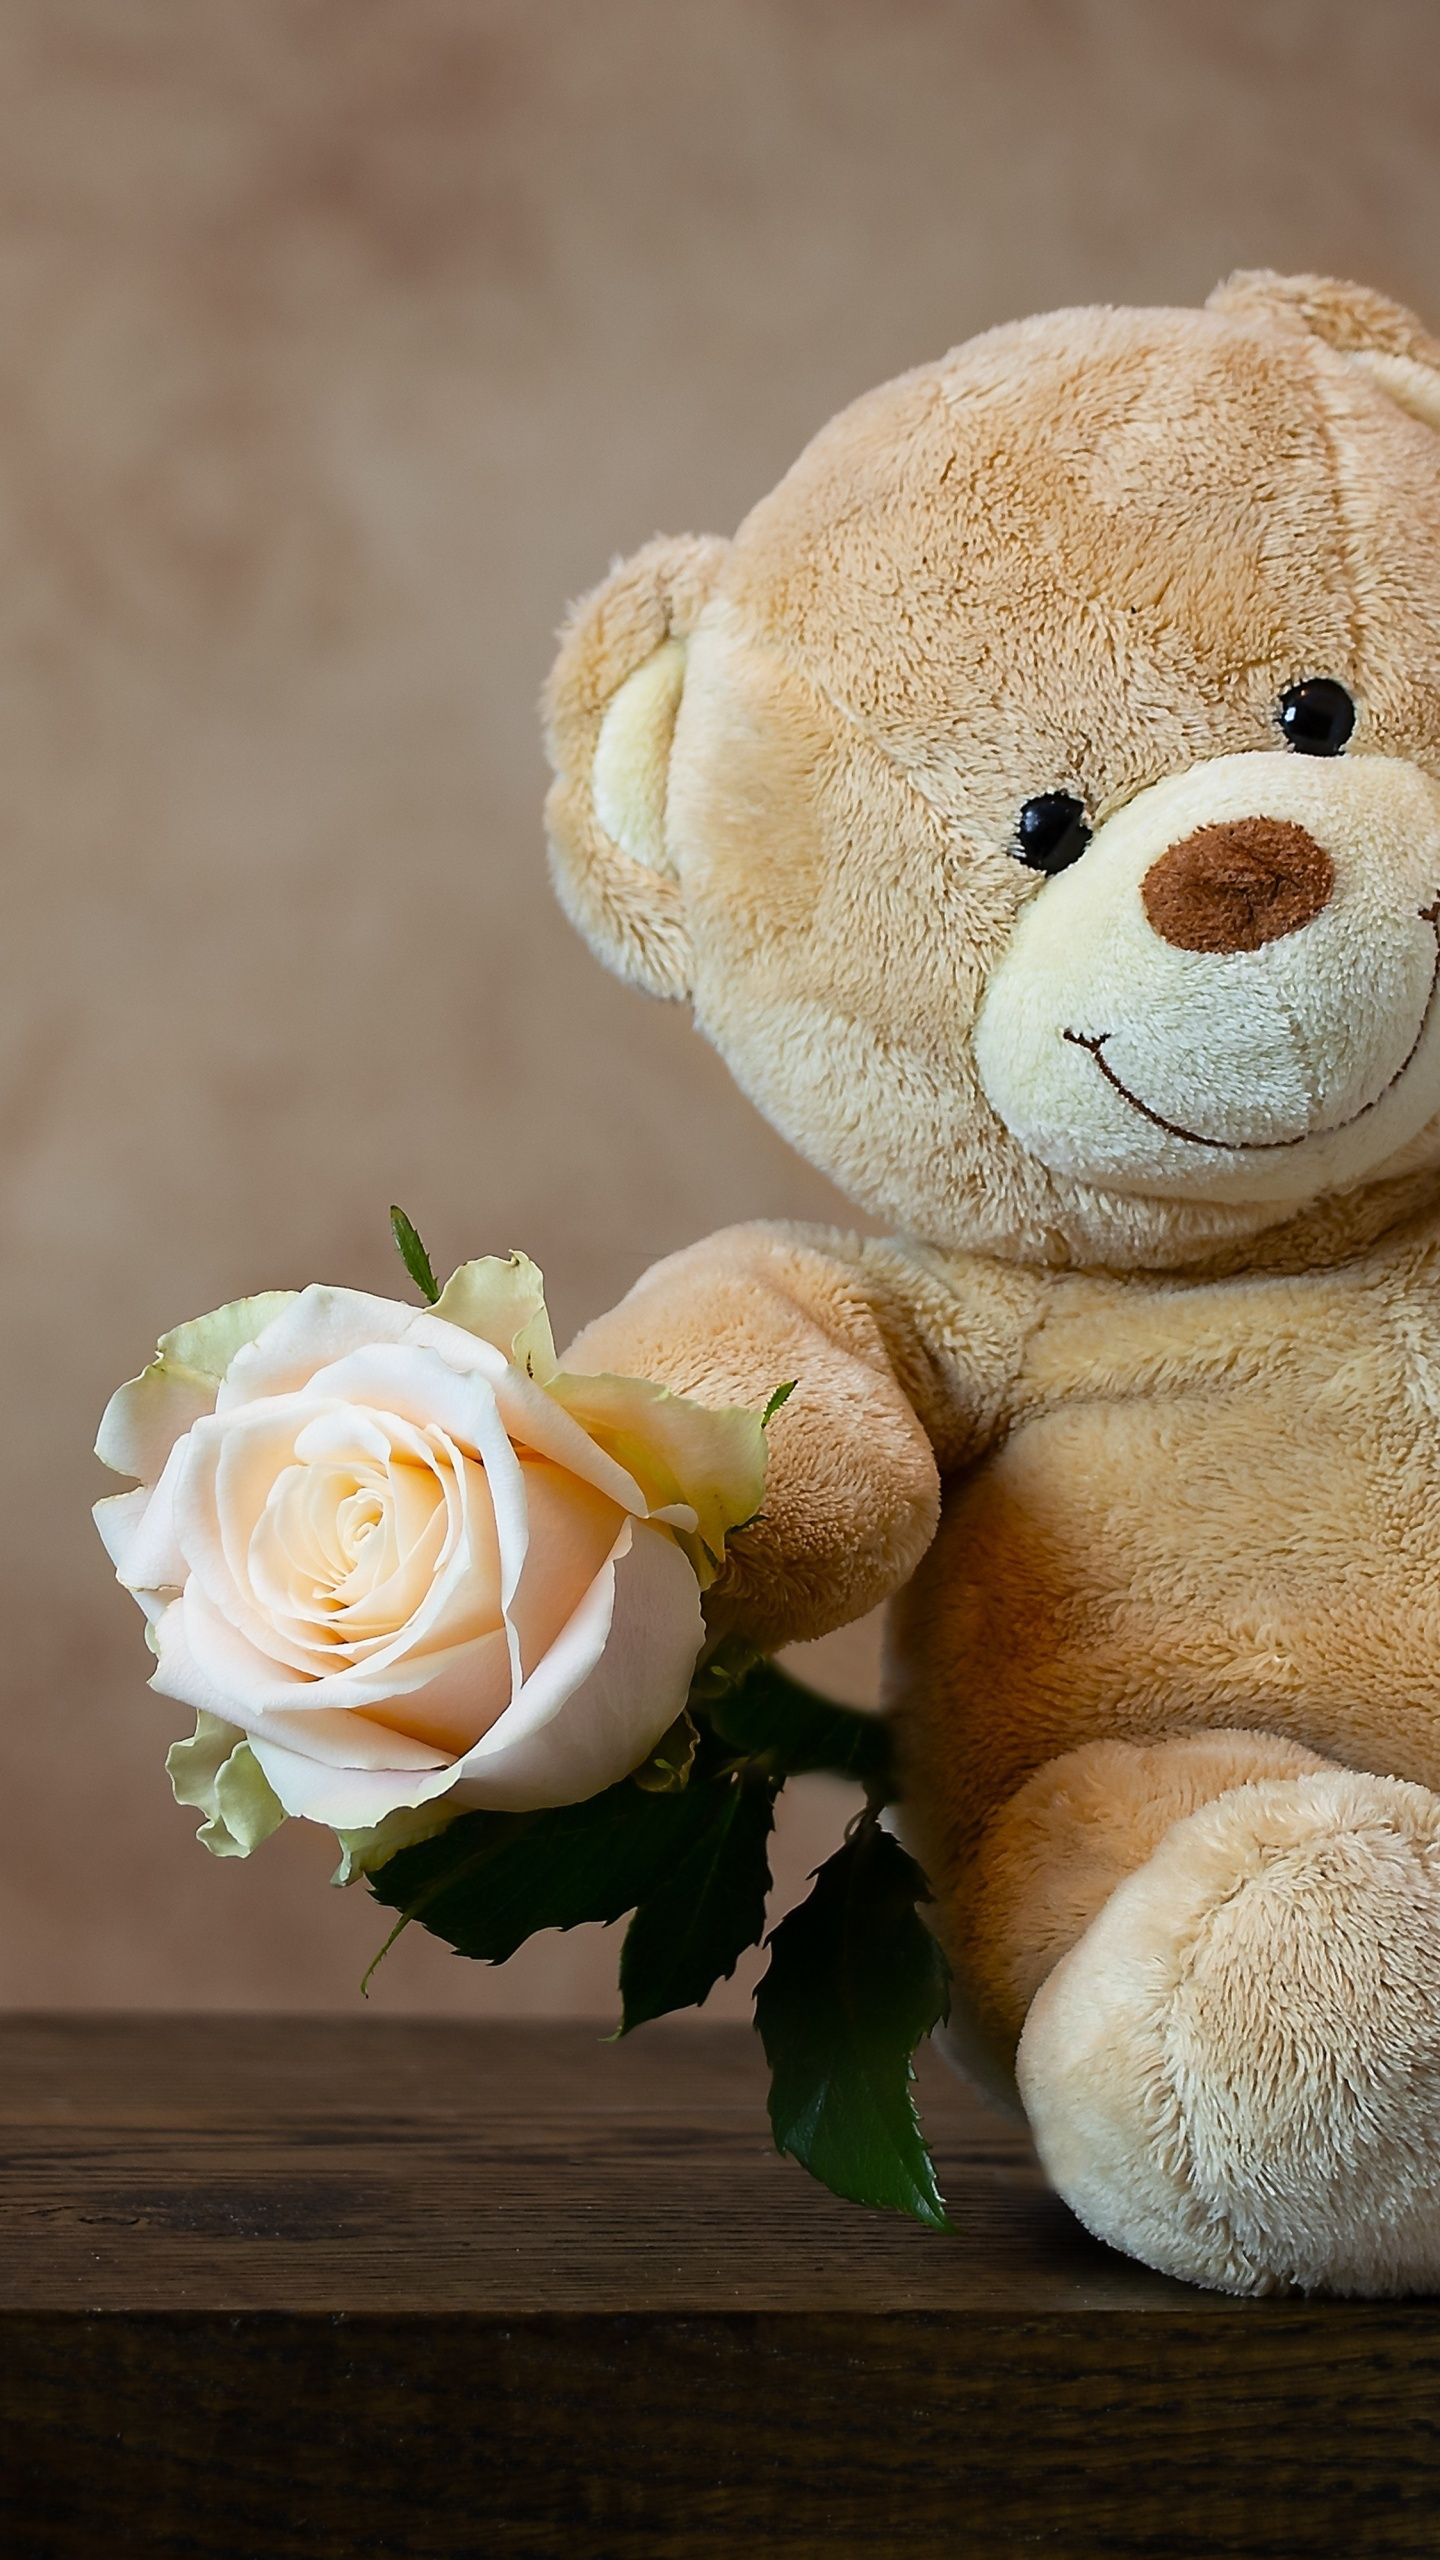 A teddy bear holding up an orange rose - Teddy bear